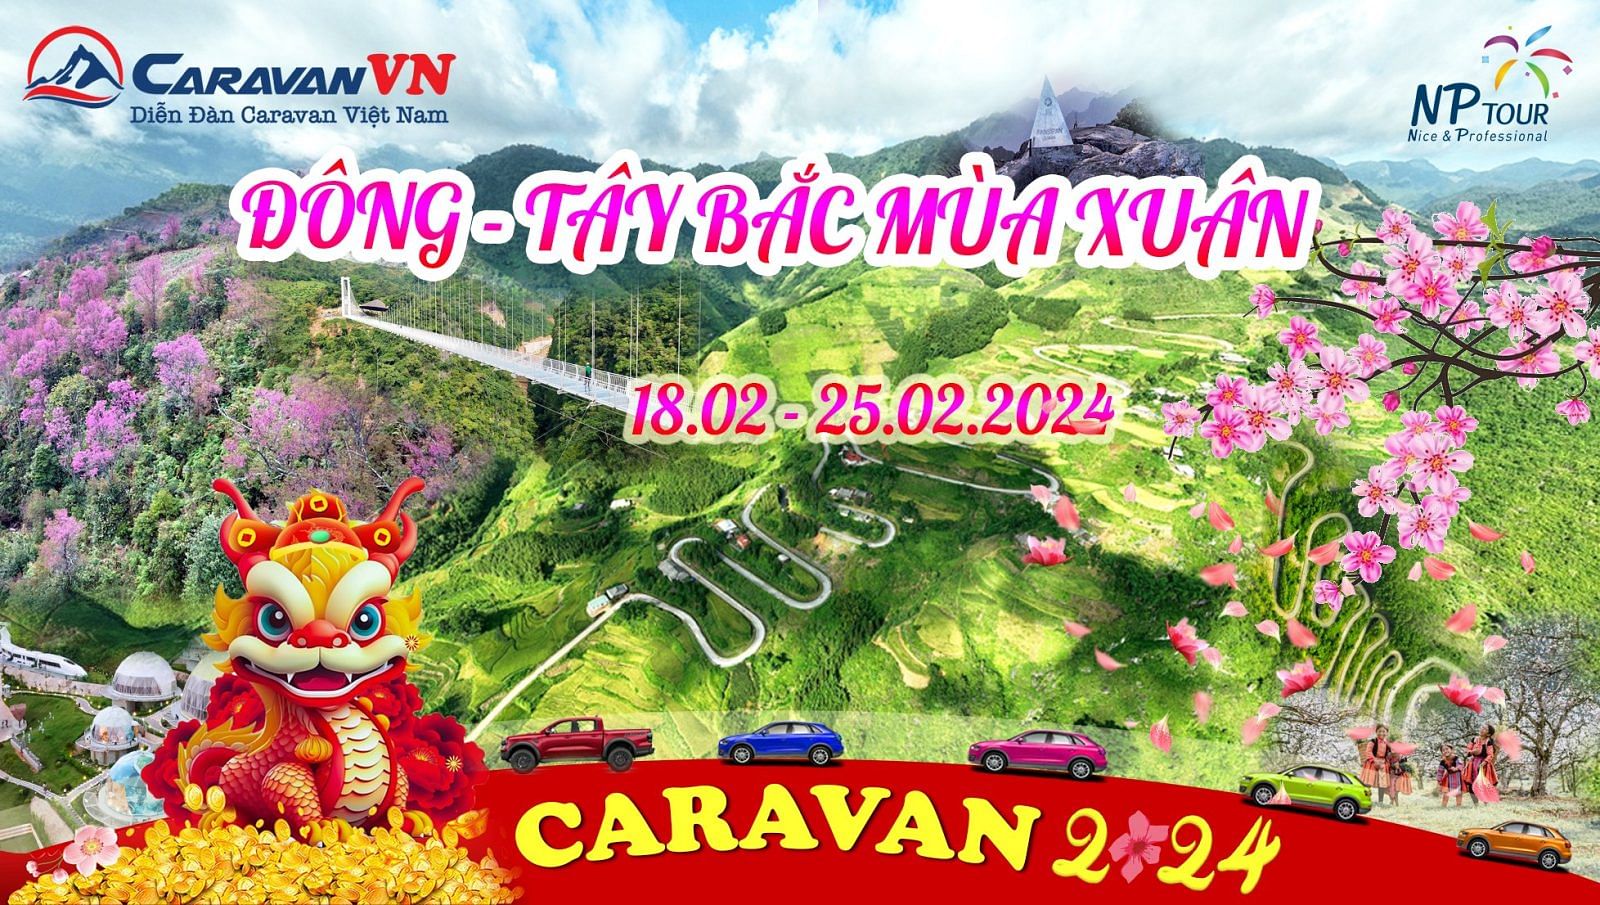 Caravan Dong Tay Bac Mua Xuan 2024 NP tour-decal